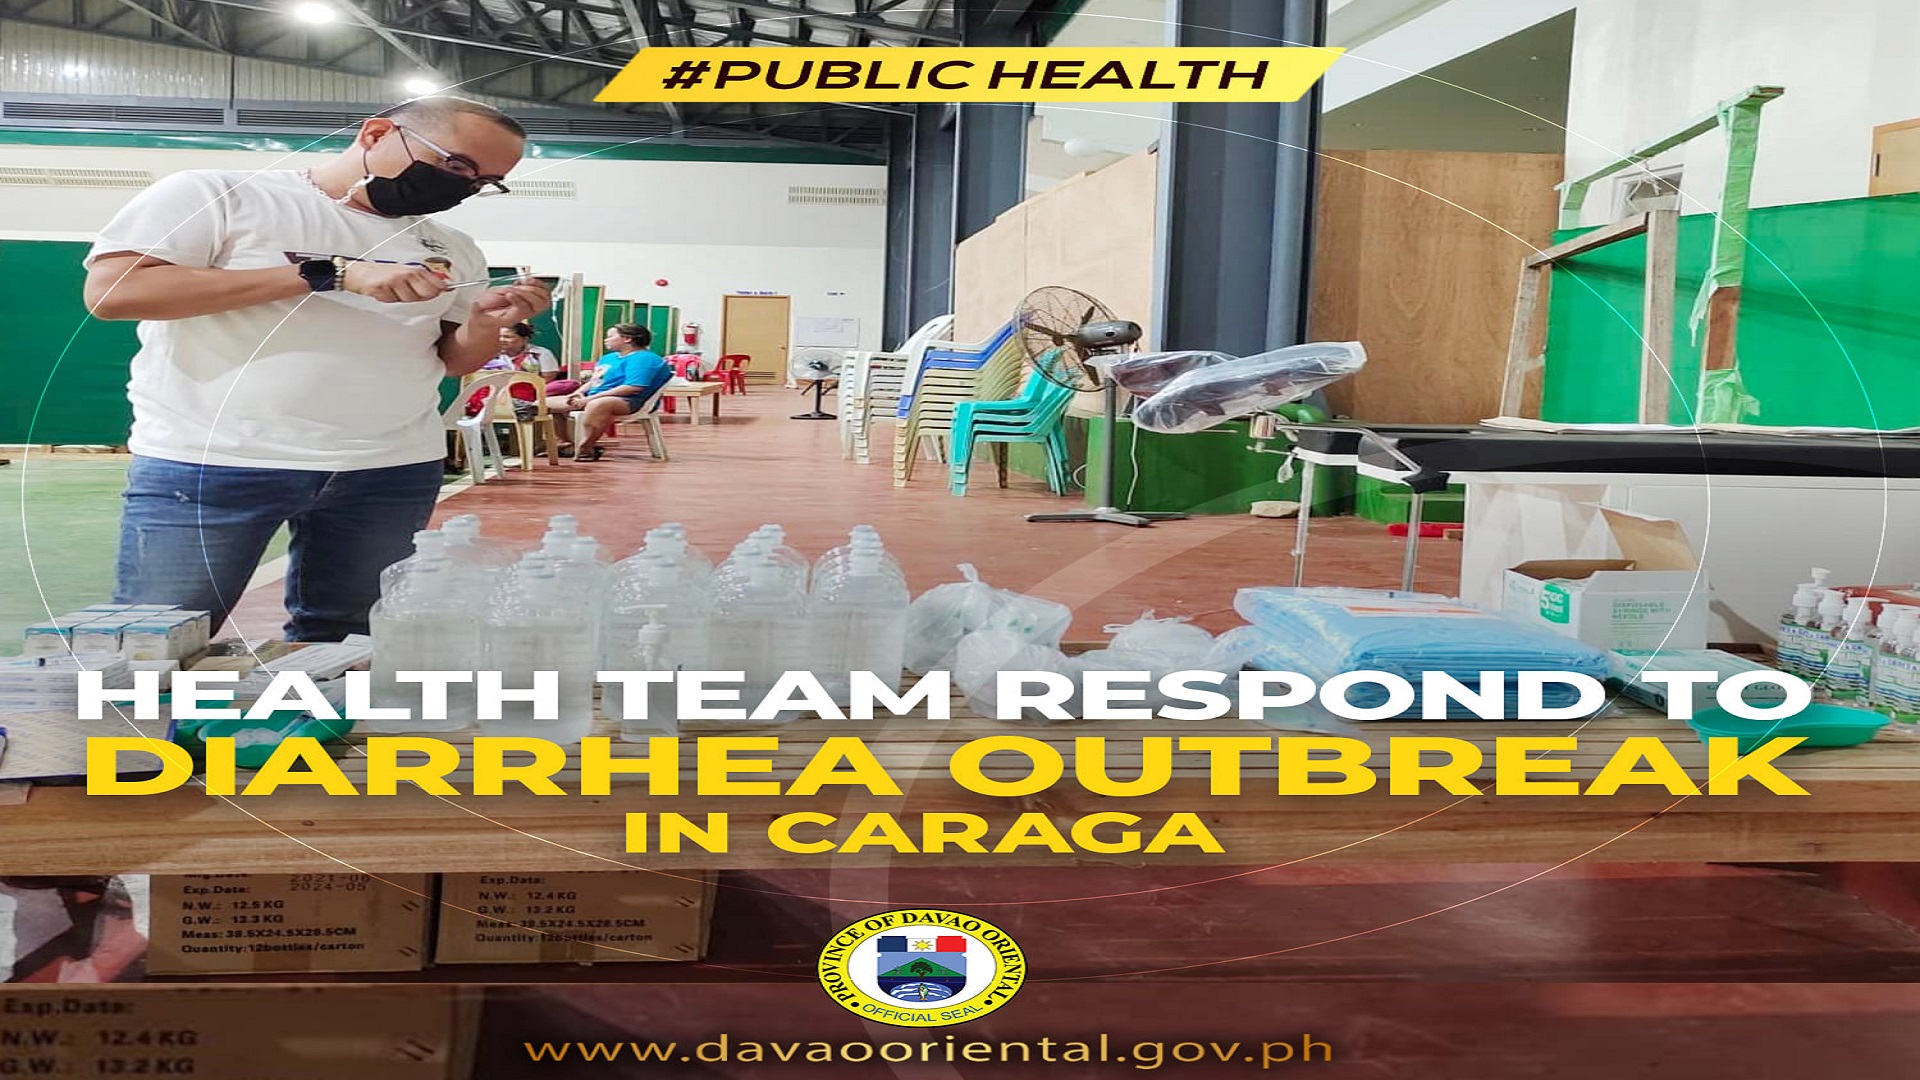 Outbreak ng diarrhea naitala sa Caraga, Davao Oriental